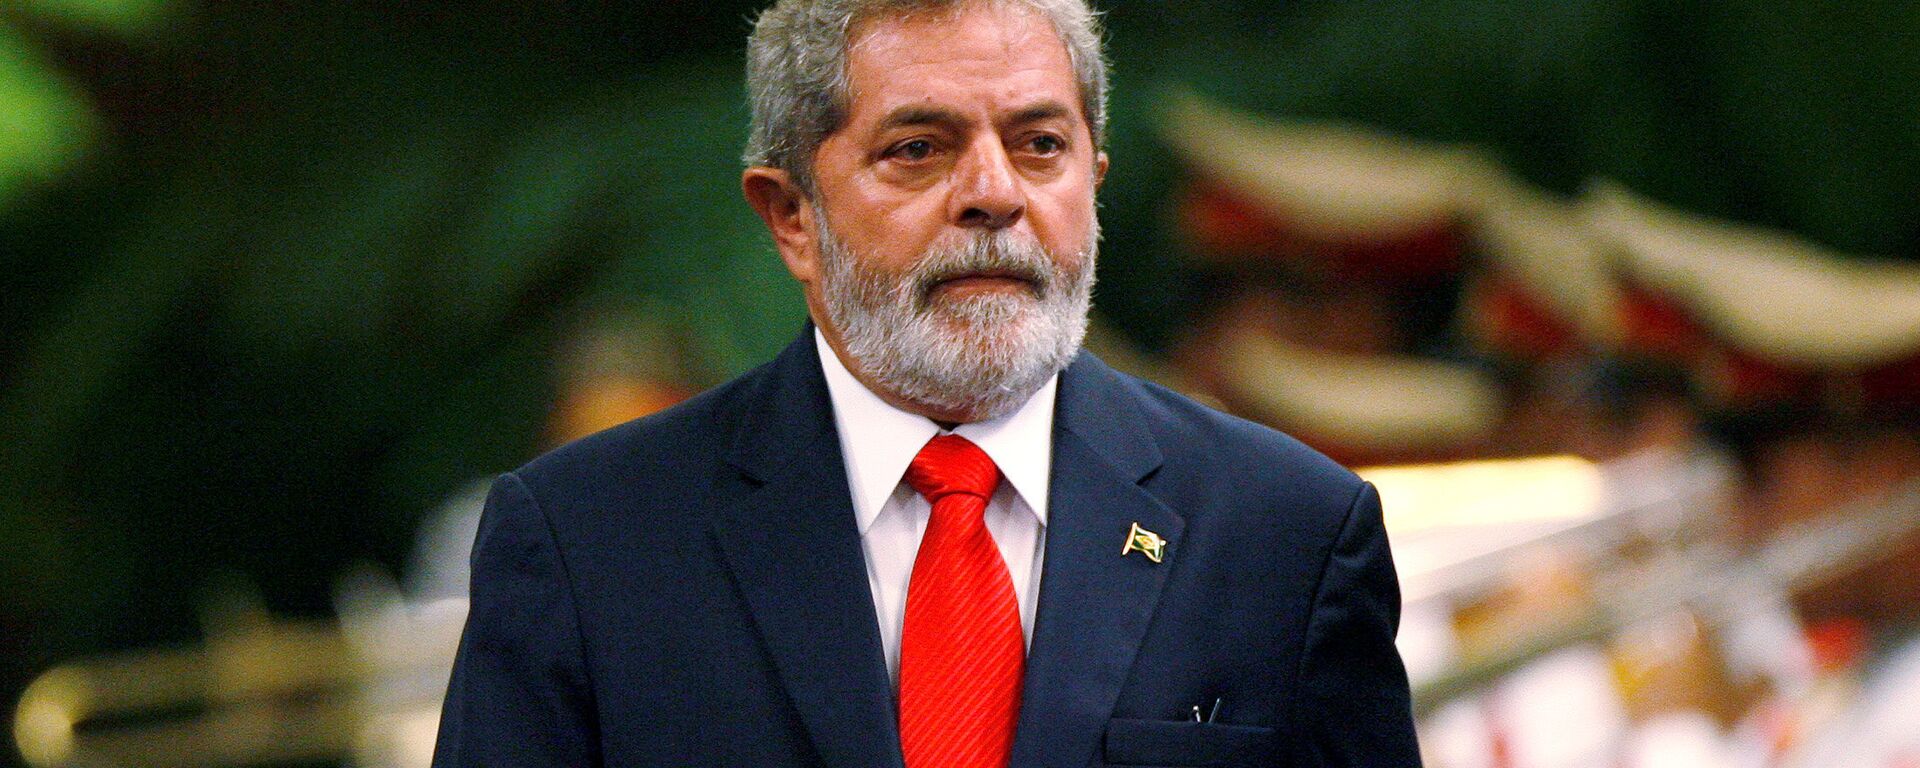 Luiz Inácio Lula da Silva, expresidente brasileño - Sputnik Mundo, 1920, 10.03.2021